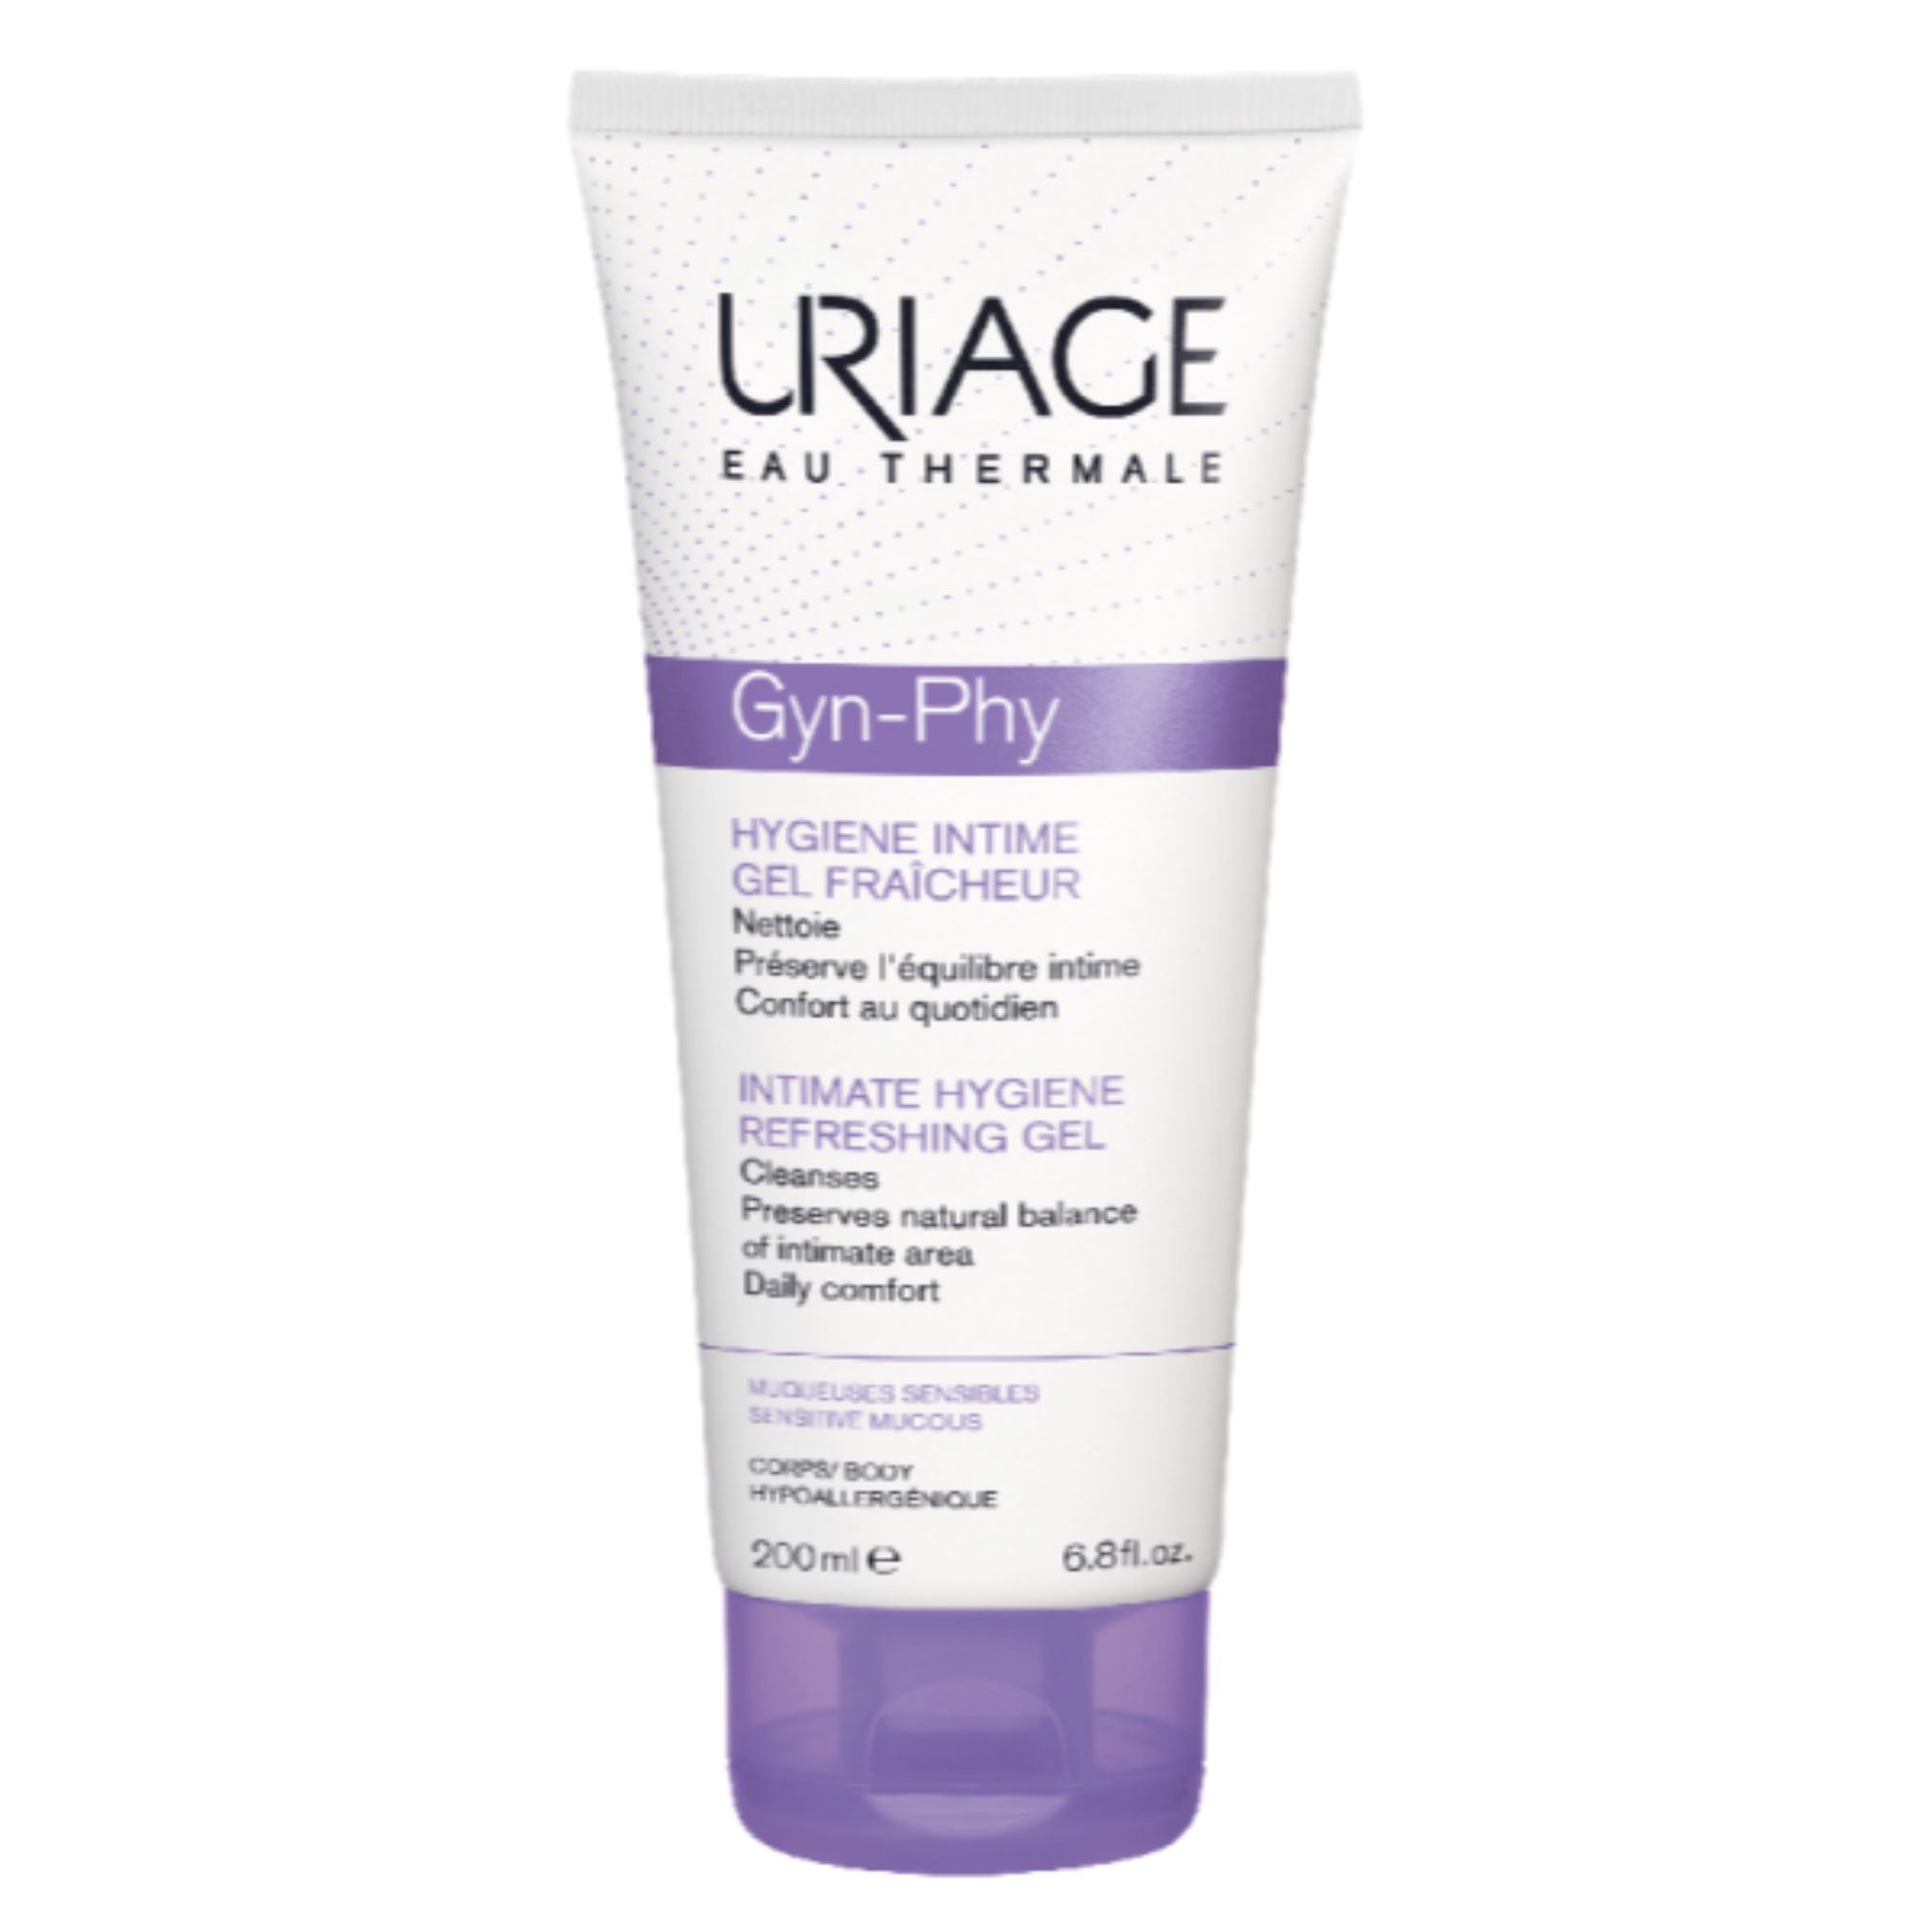 Uriage Gyn-Phy Gel 200ml